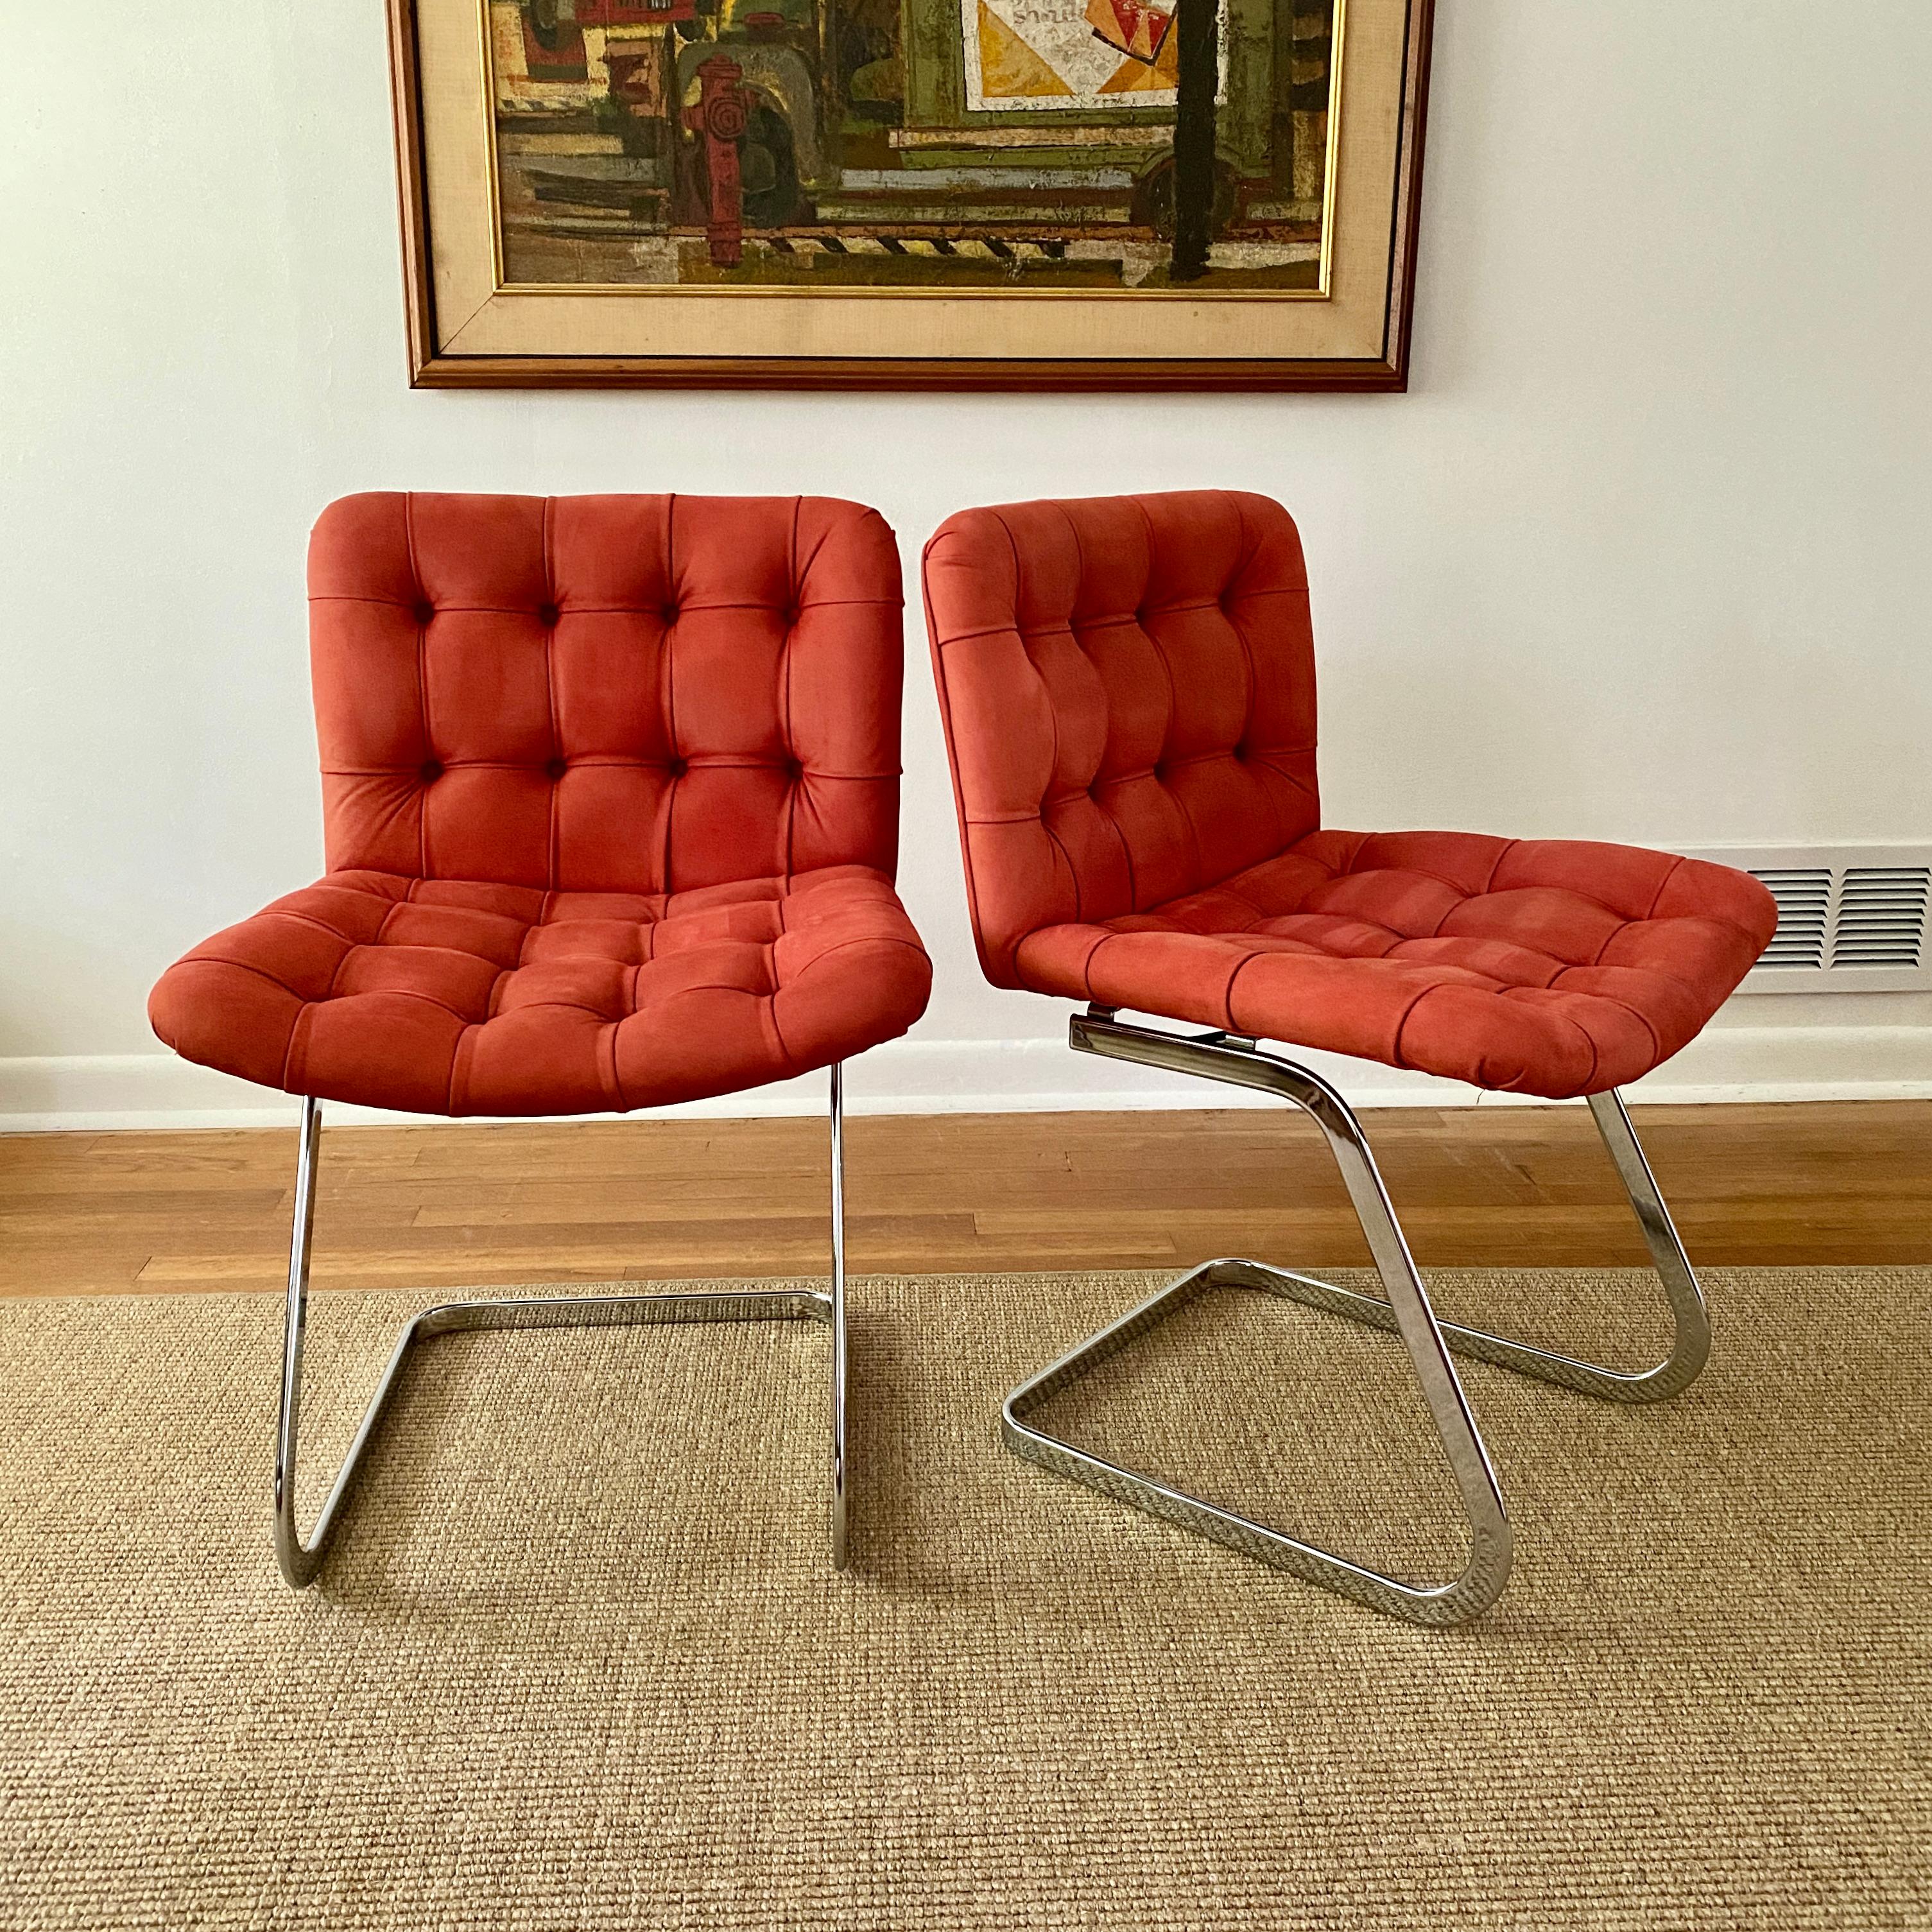 Ein schönes Paar Vintage-Freischwinger, entworfen von Robert Haussmann für de Sede, die Stühle wurden von Stendig vertrieben.  Die Modellnummer der Stühle lautet RH - 304 und sie wurden zwischen 1955 und 1960 hergestellt.  Die Beine der Stühle sind